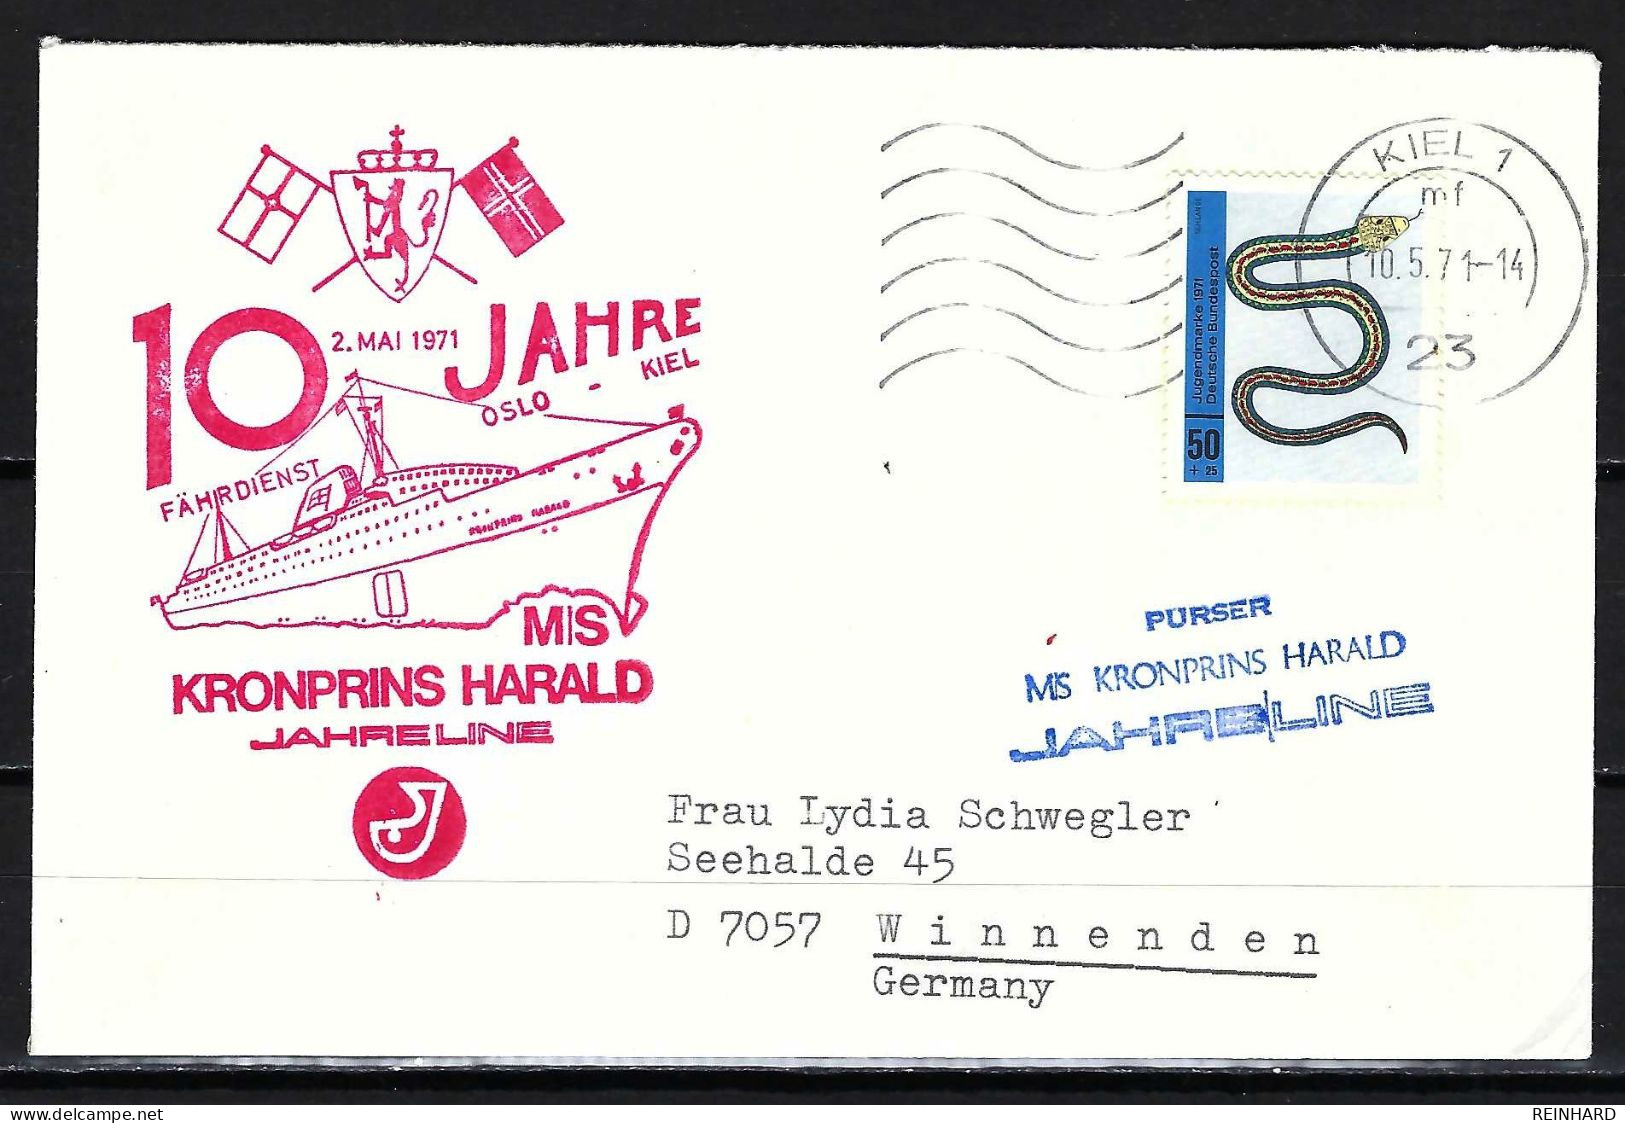 BUND Beleg 10 Jahre Fährdienst Oslo - Kiel Am 2. Mai 1971 (2) - Siehe Bild - Schiffahrt